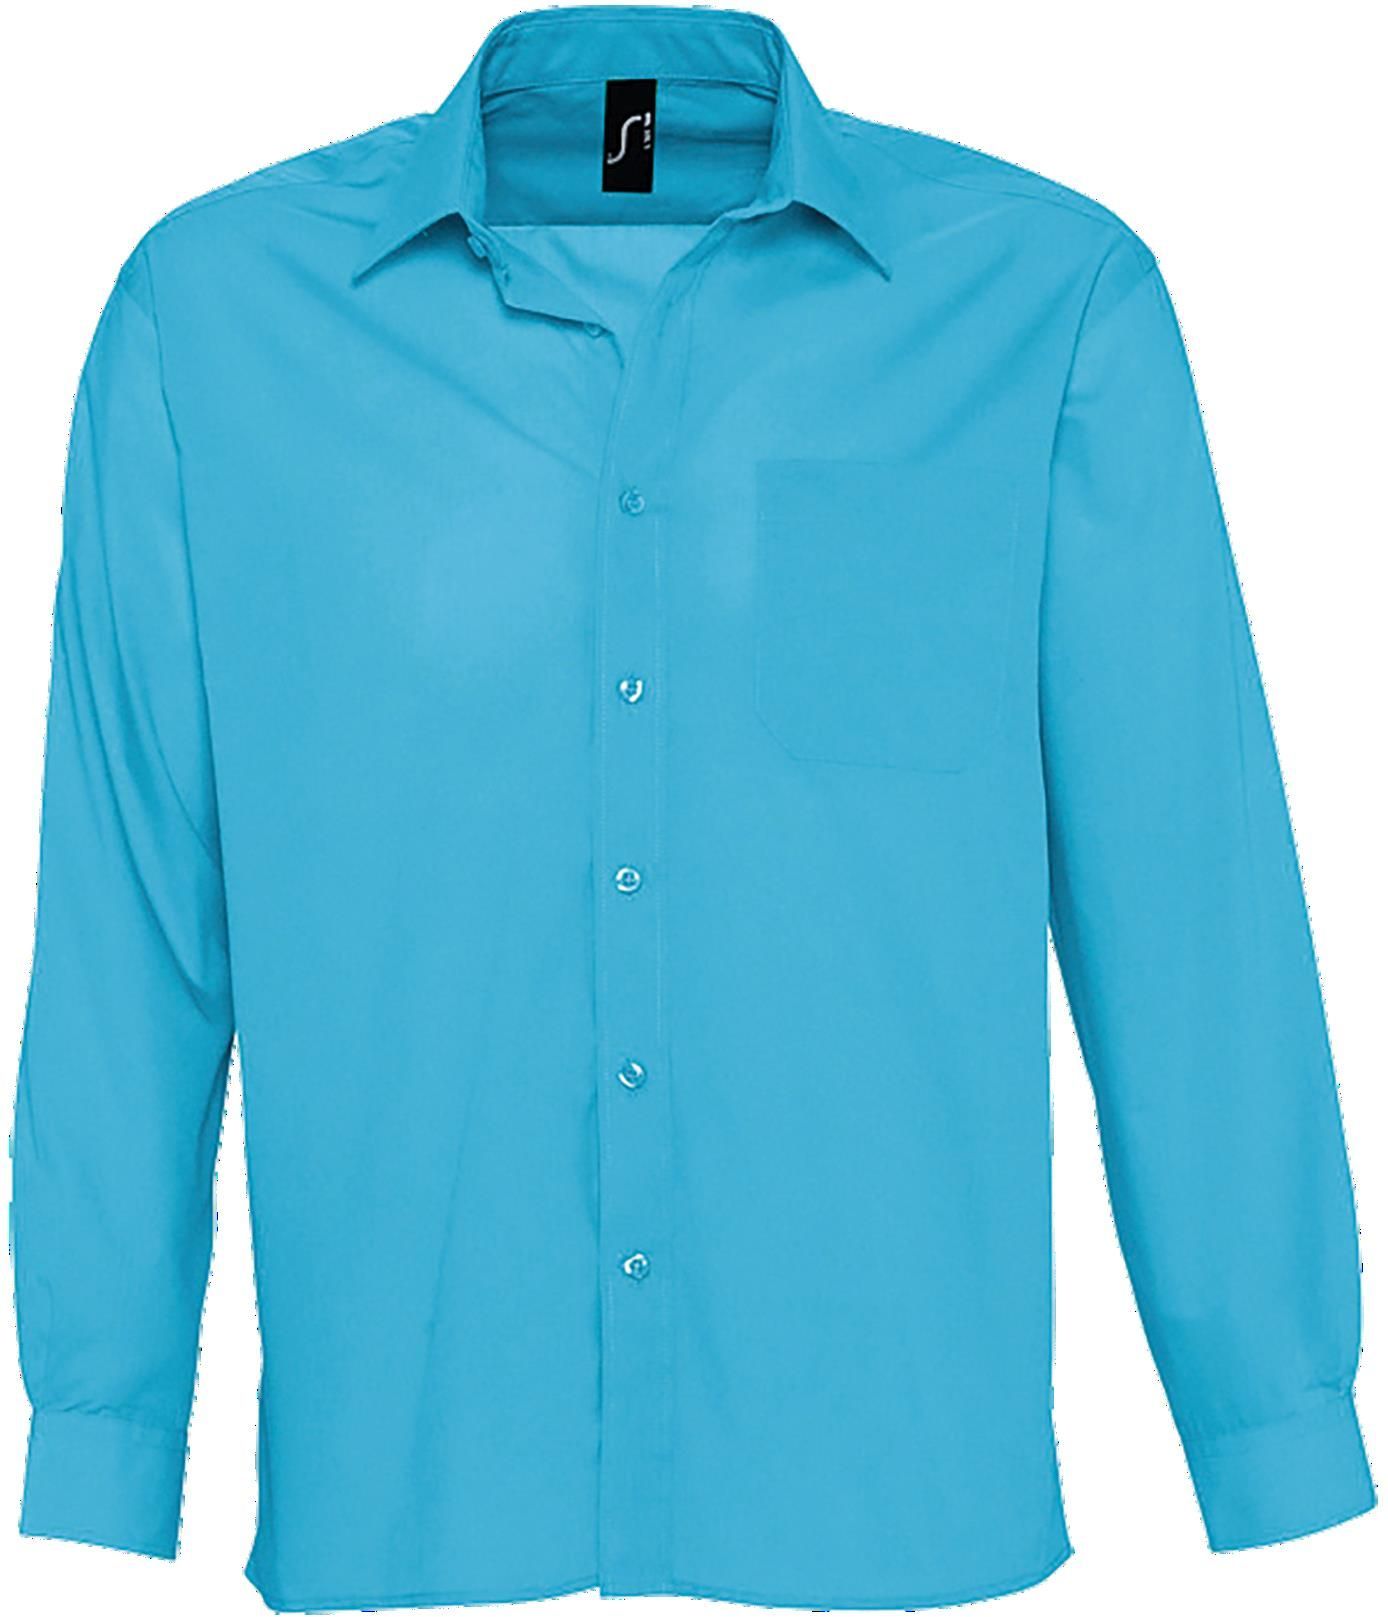 Ανδρικό μακρυμάνικο πουκάμισο από ποπλίνα Baltimore SOLS 16040 Atoll Blue